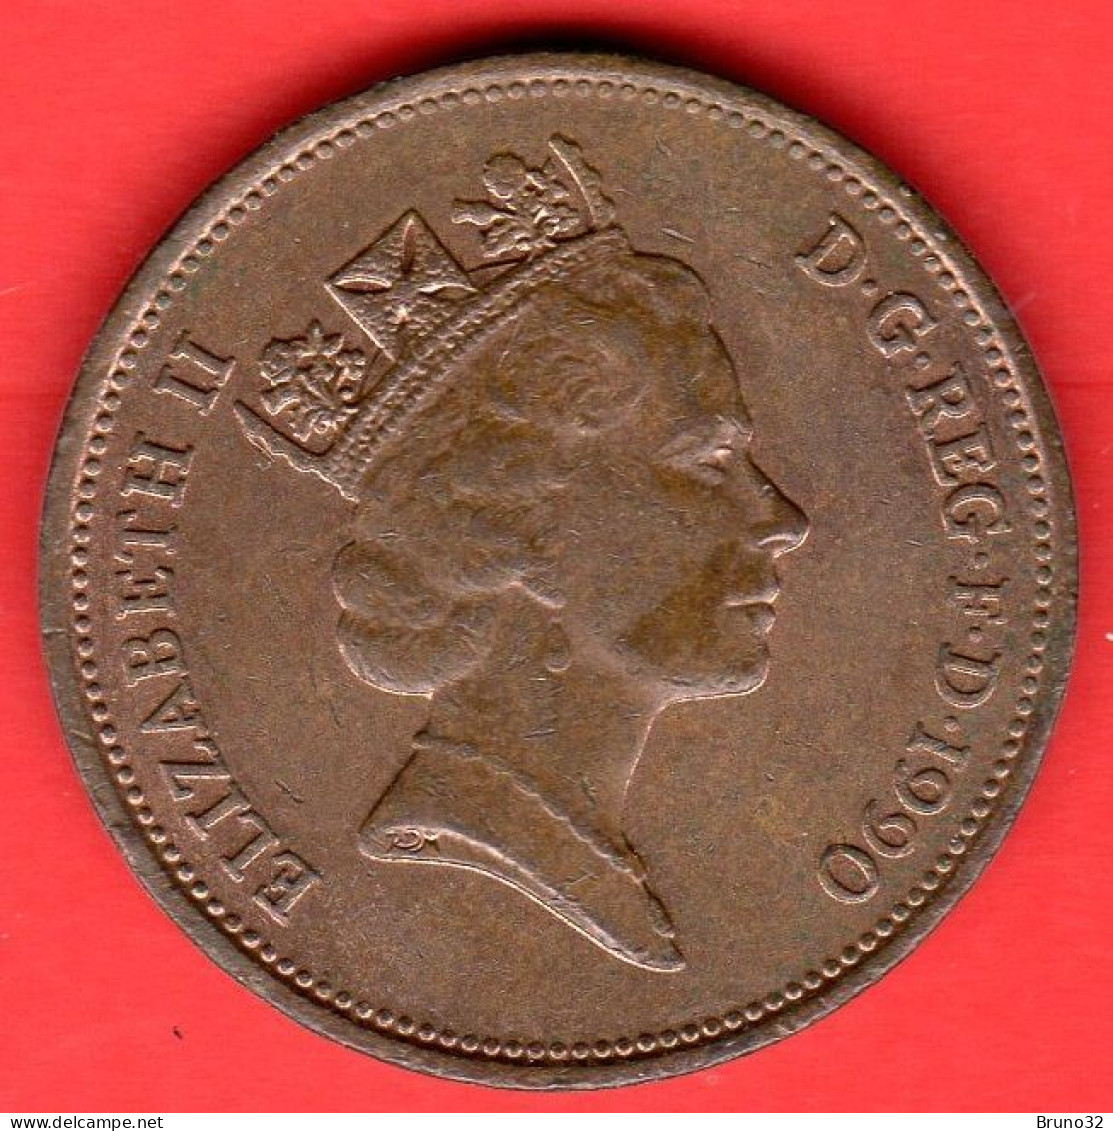 Gran Bretagna - Great Britain - GB - 2 Pence - 1990 - QFDC/aUNC - Come Da Foto - 2 Pence & 2 New Pence